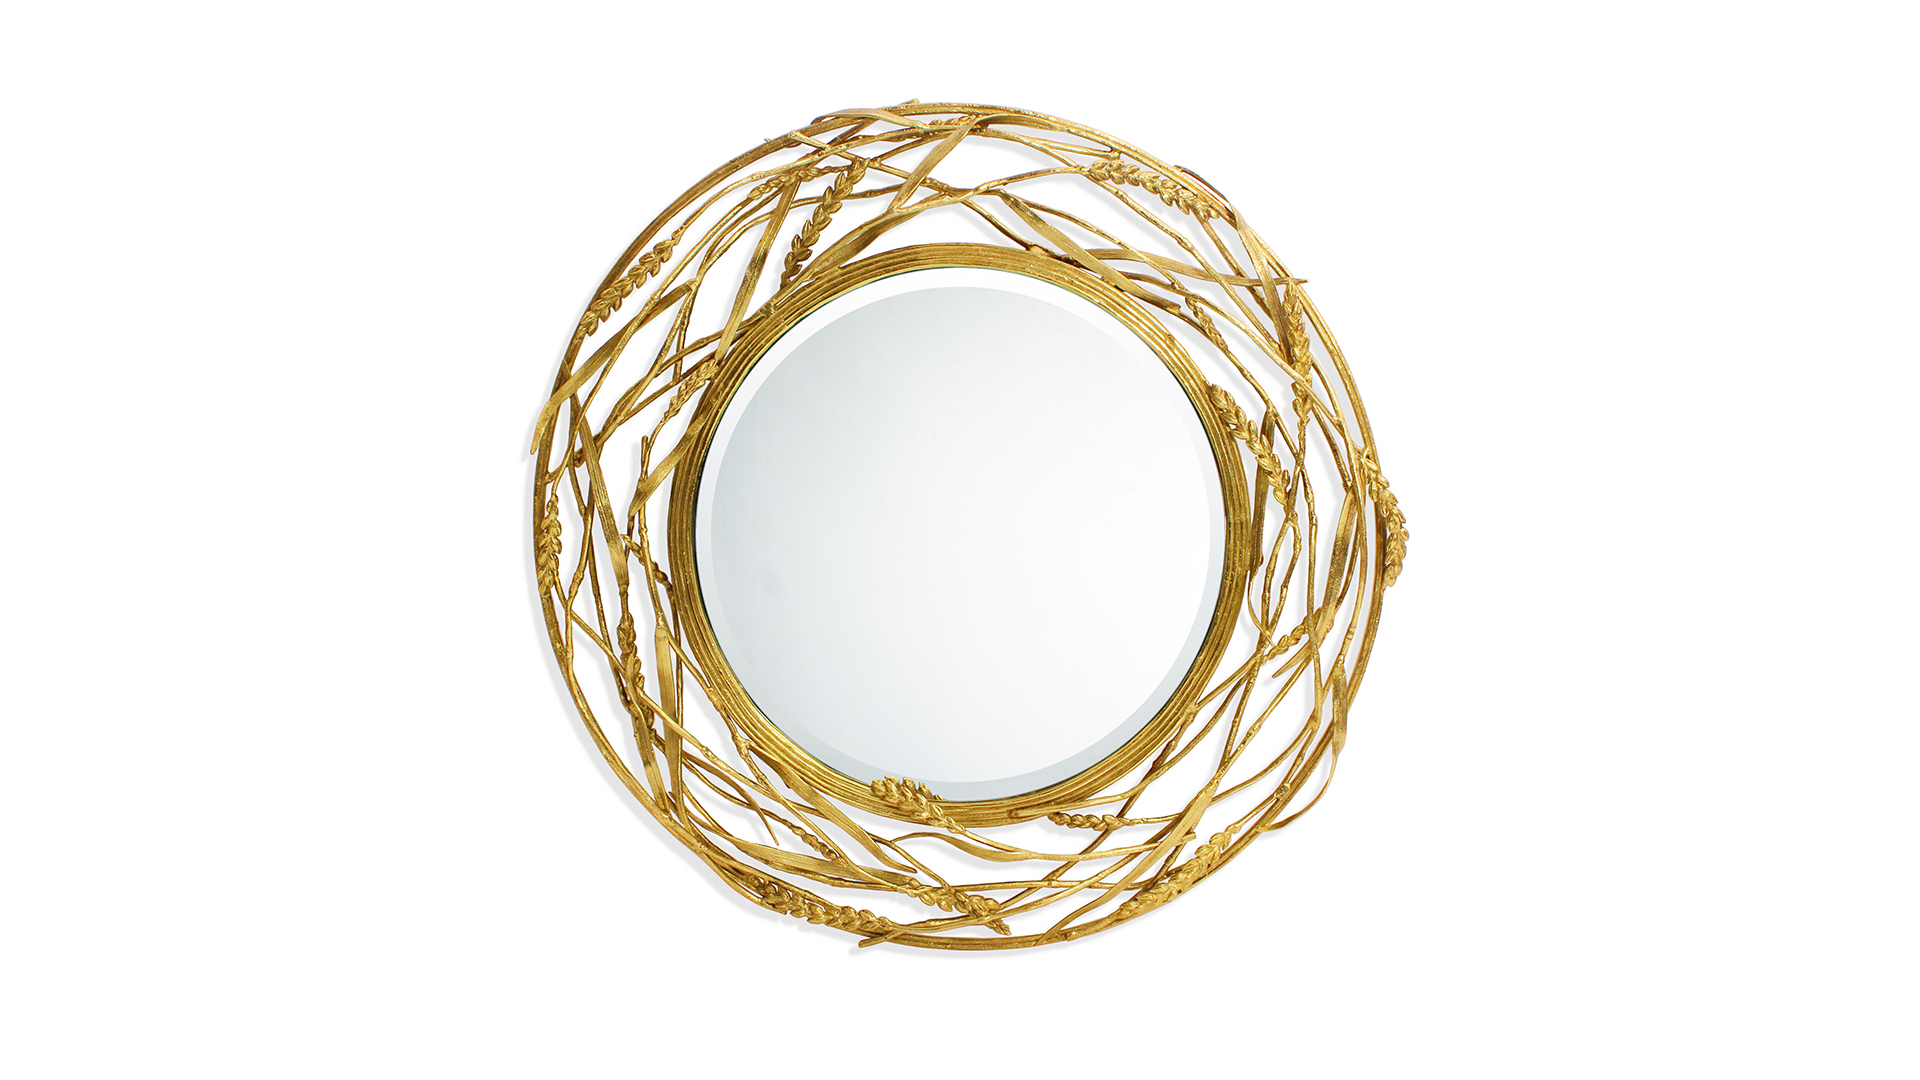 Зеркало круглое Michael Aram Золотая пшеница 62 см